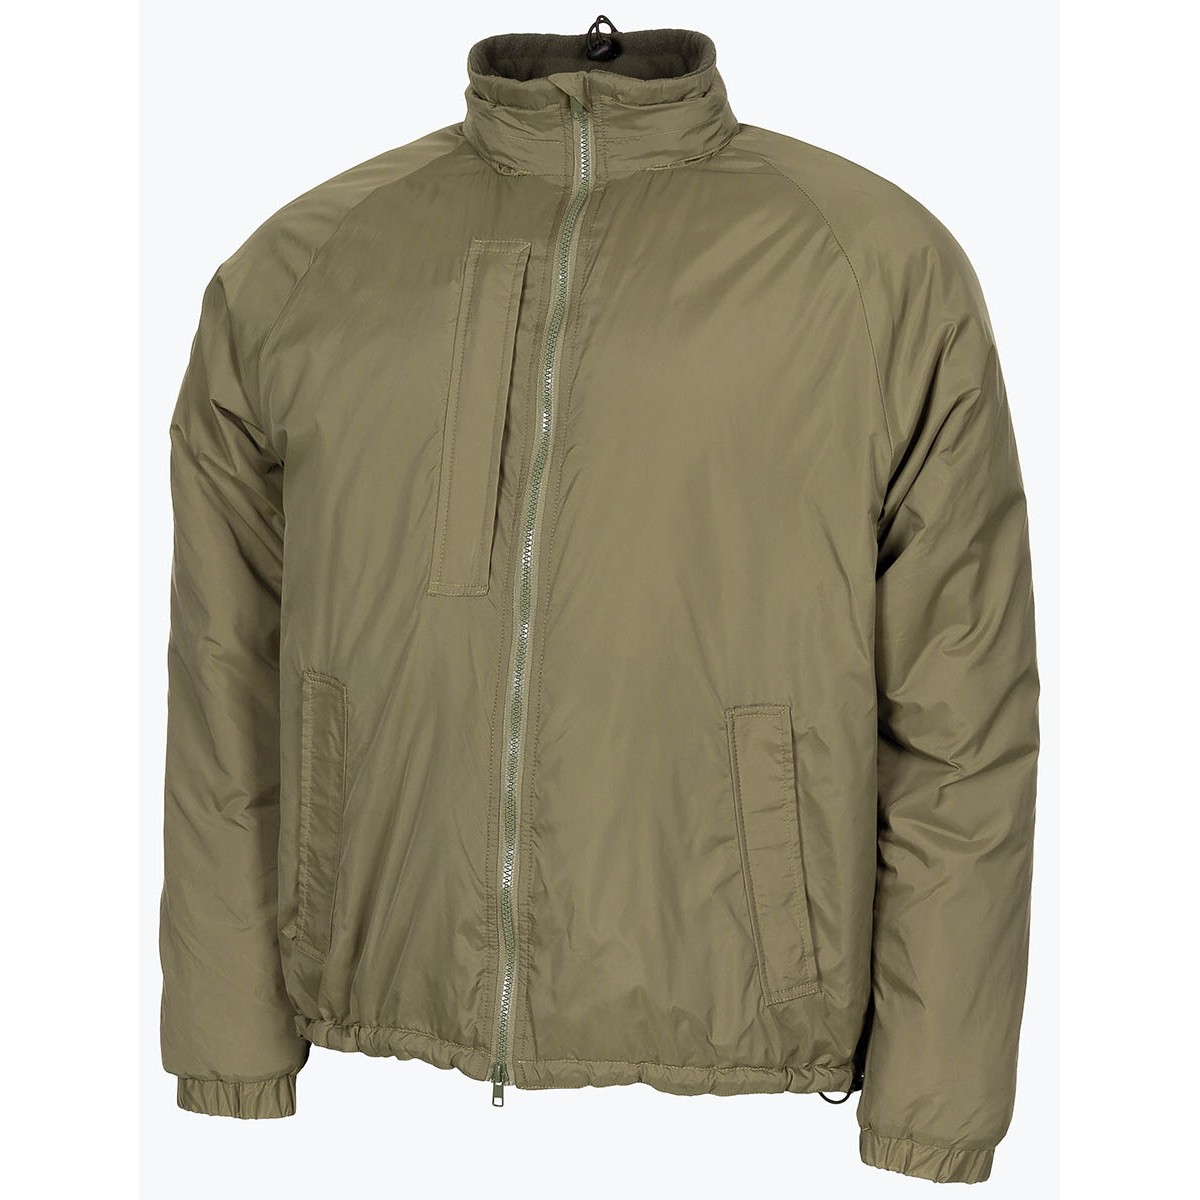 Bunda zateplovací zelená GB Softie Thermal Jacket OD Green MFH® Adventure Velikost: L